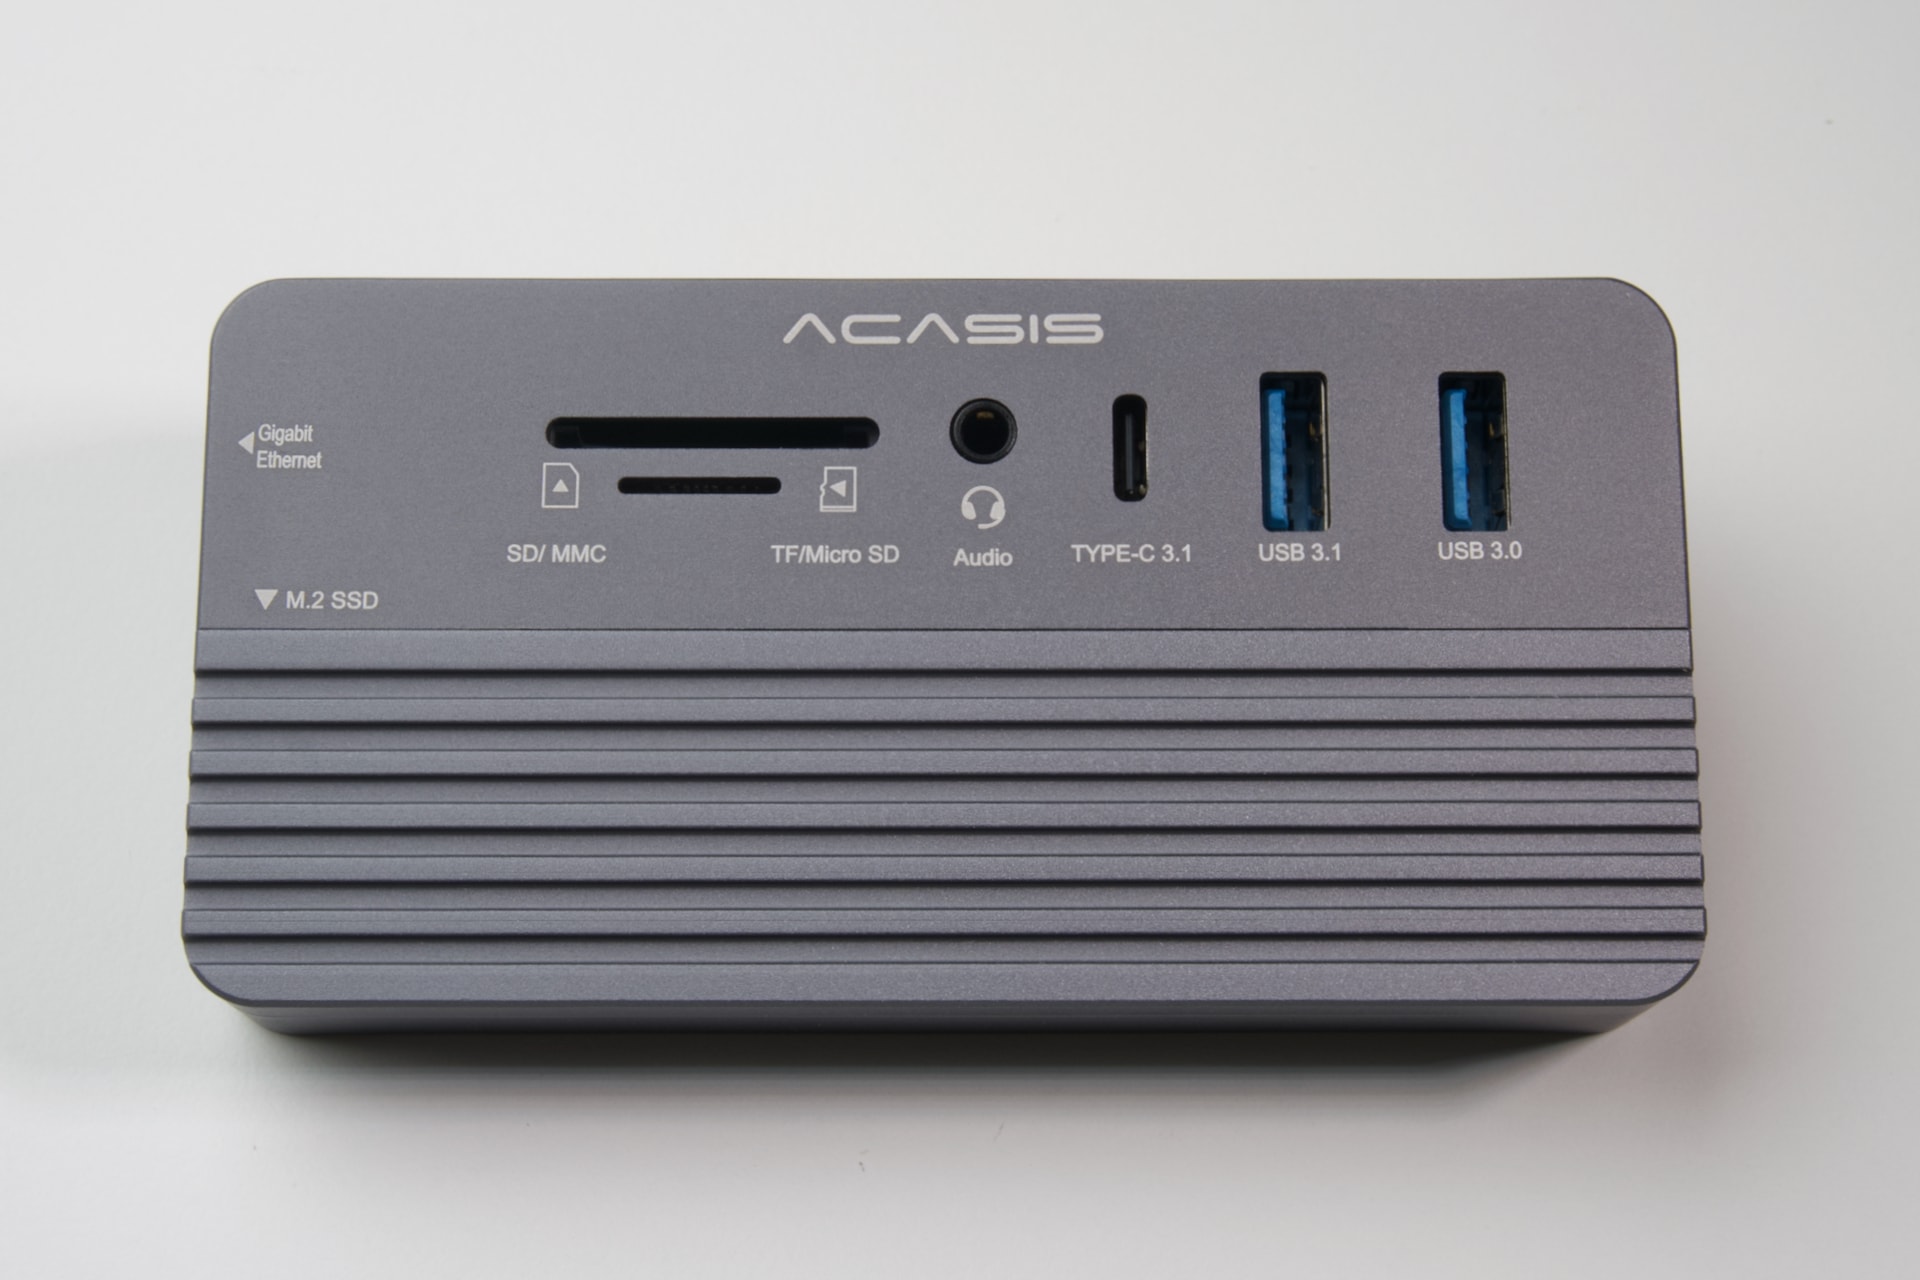 10 in USB-CハブとSSDケースが合体した『ACASIS』実機先行レビュー。マクアケで500万円超の支援を集めた話題の製品の実力は？  AppBank